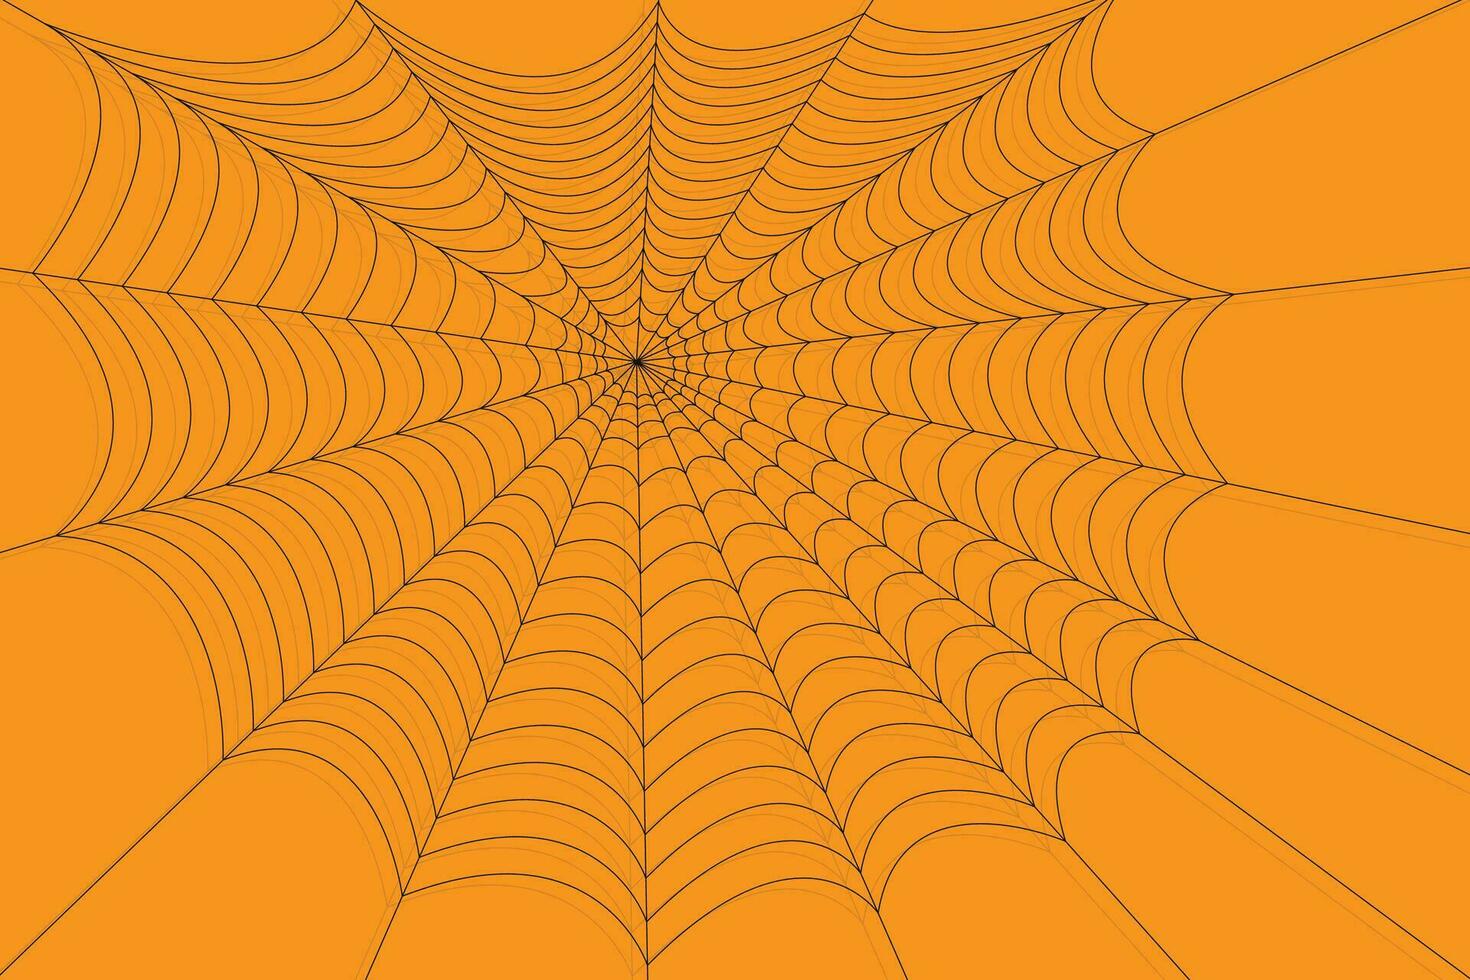 Halloween spider web net texture pattern on orange background vector